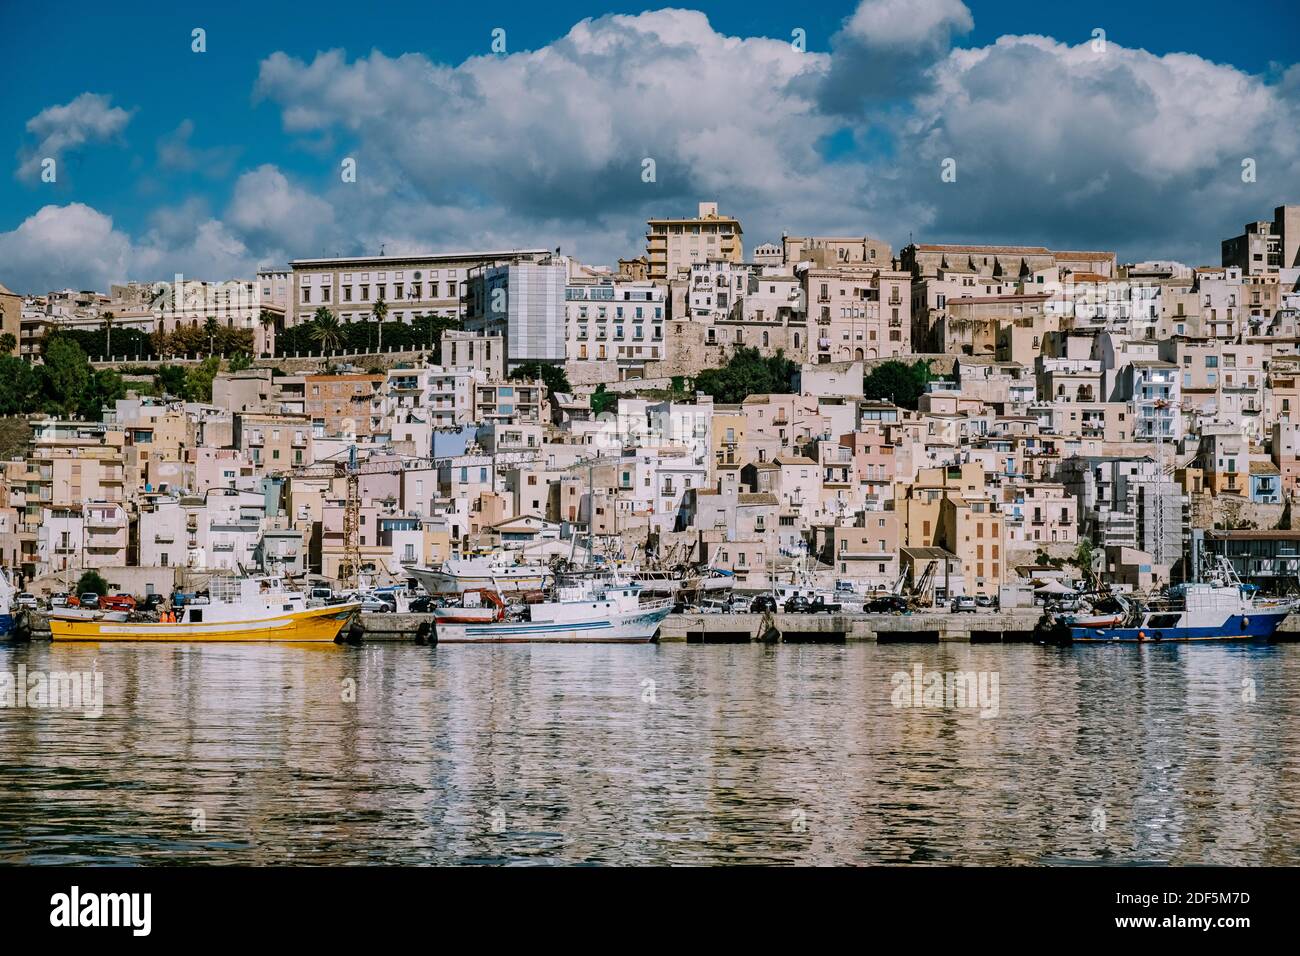 Sciacca Sizilien Oktober 2020, Fischerboote und Menschen reparieren Netze in der bunten Stadt Sciacca mit Blick auf ihren Hafen. Provinz Agrigento, Sizilien. Hochwertige Fotos Stockfoto